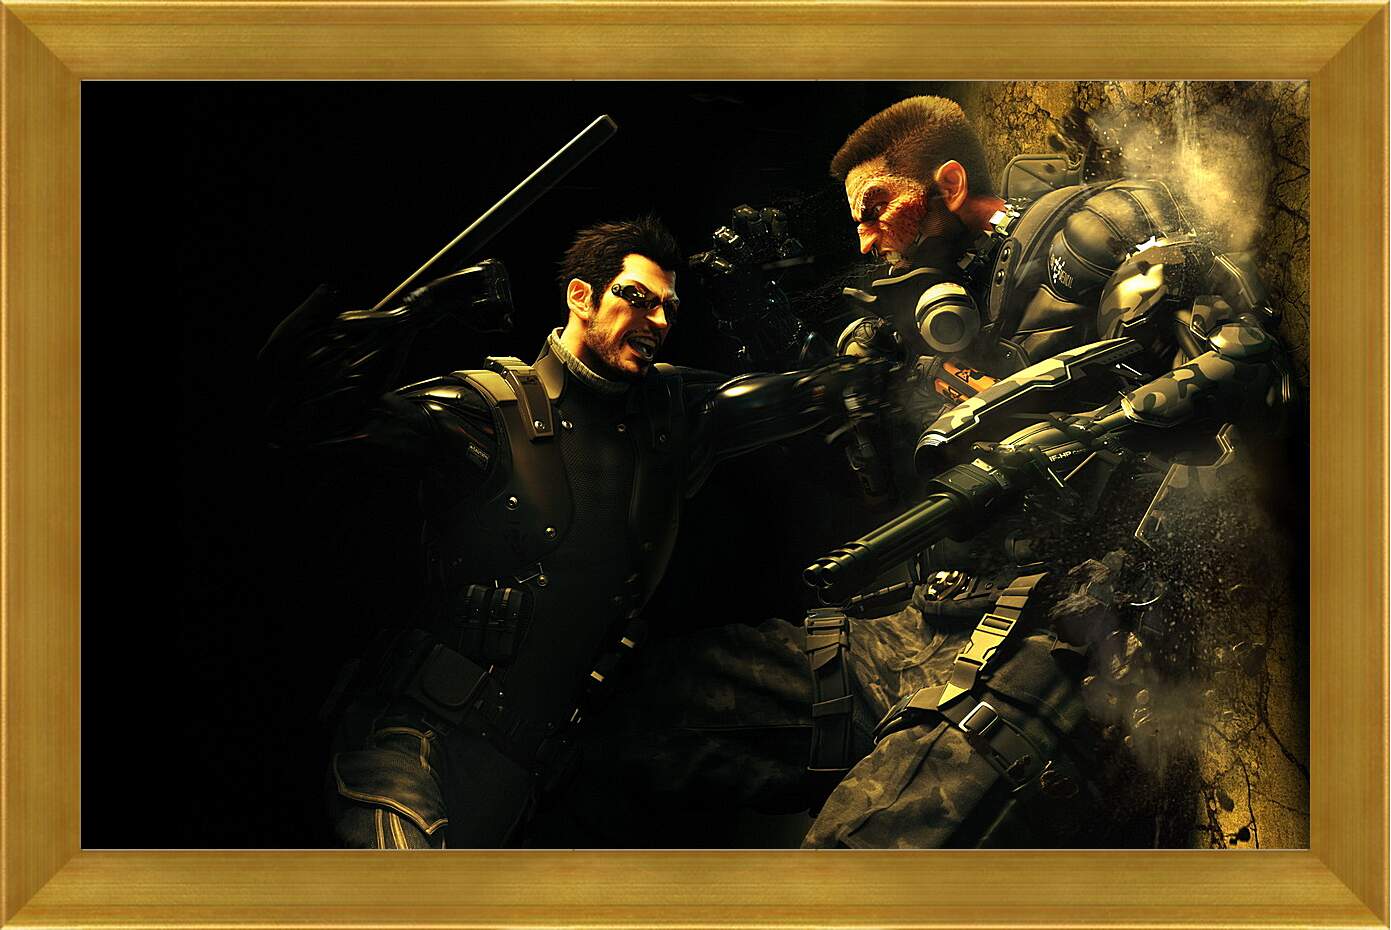 Картина в раме - Deus Ex: Human Revolution
